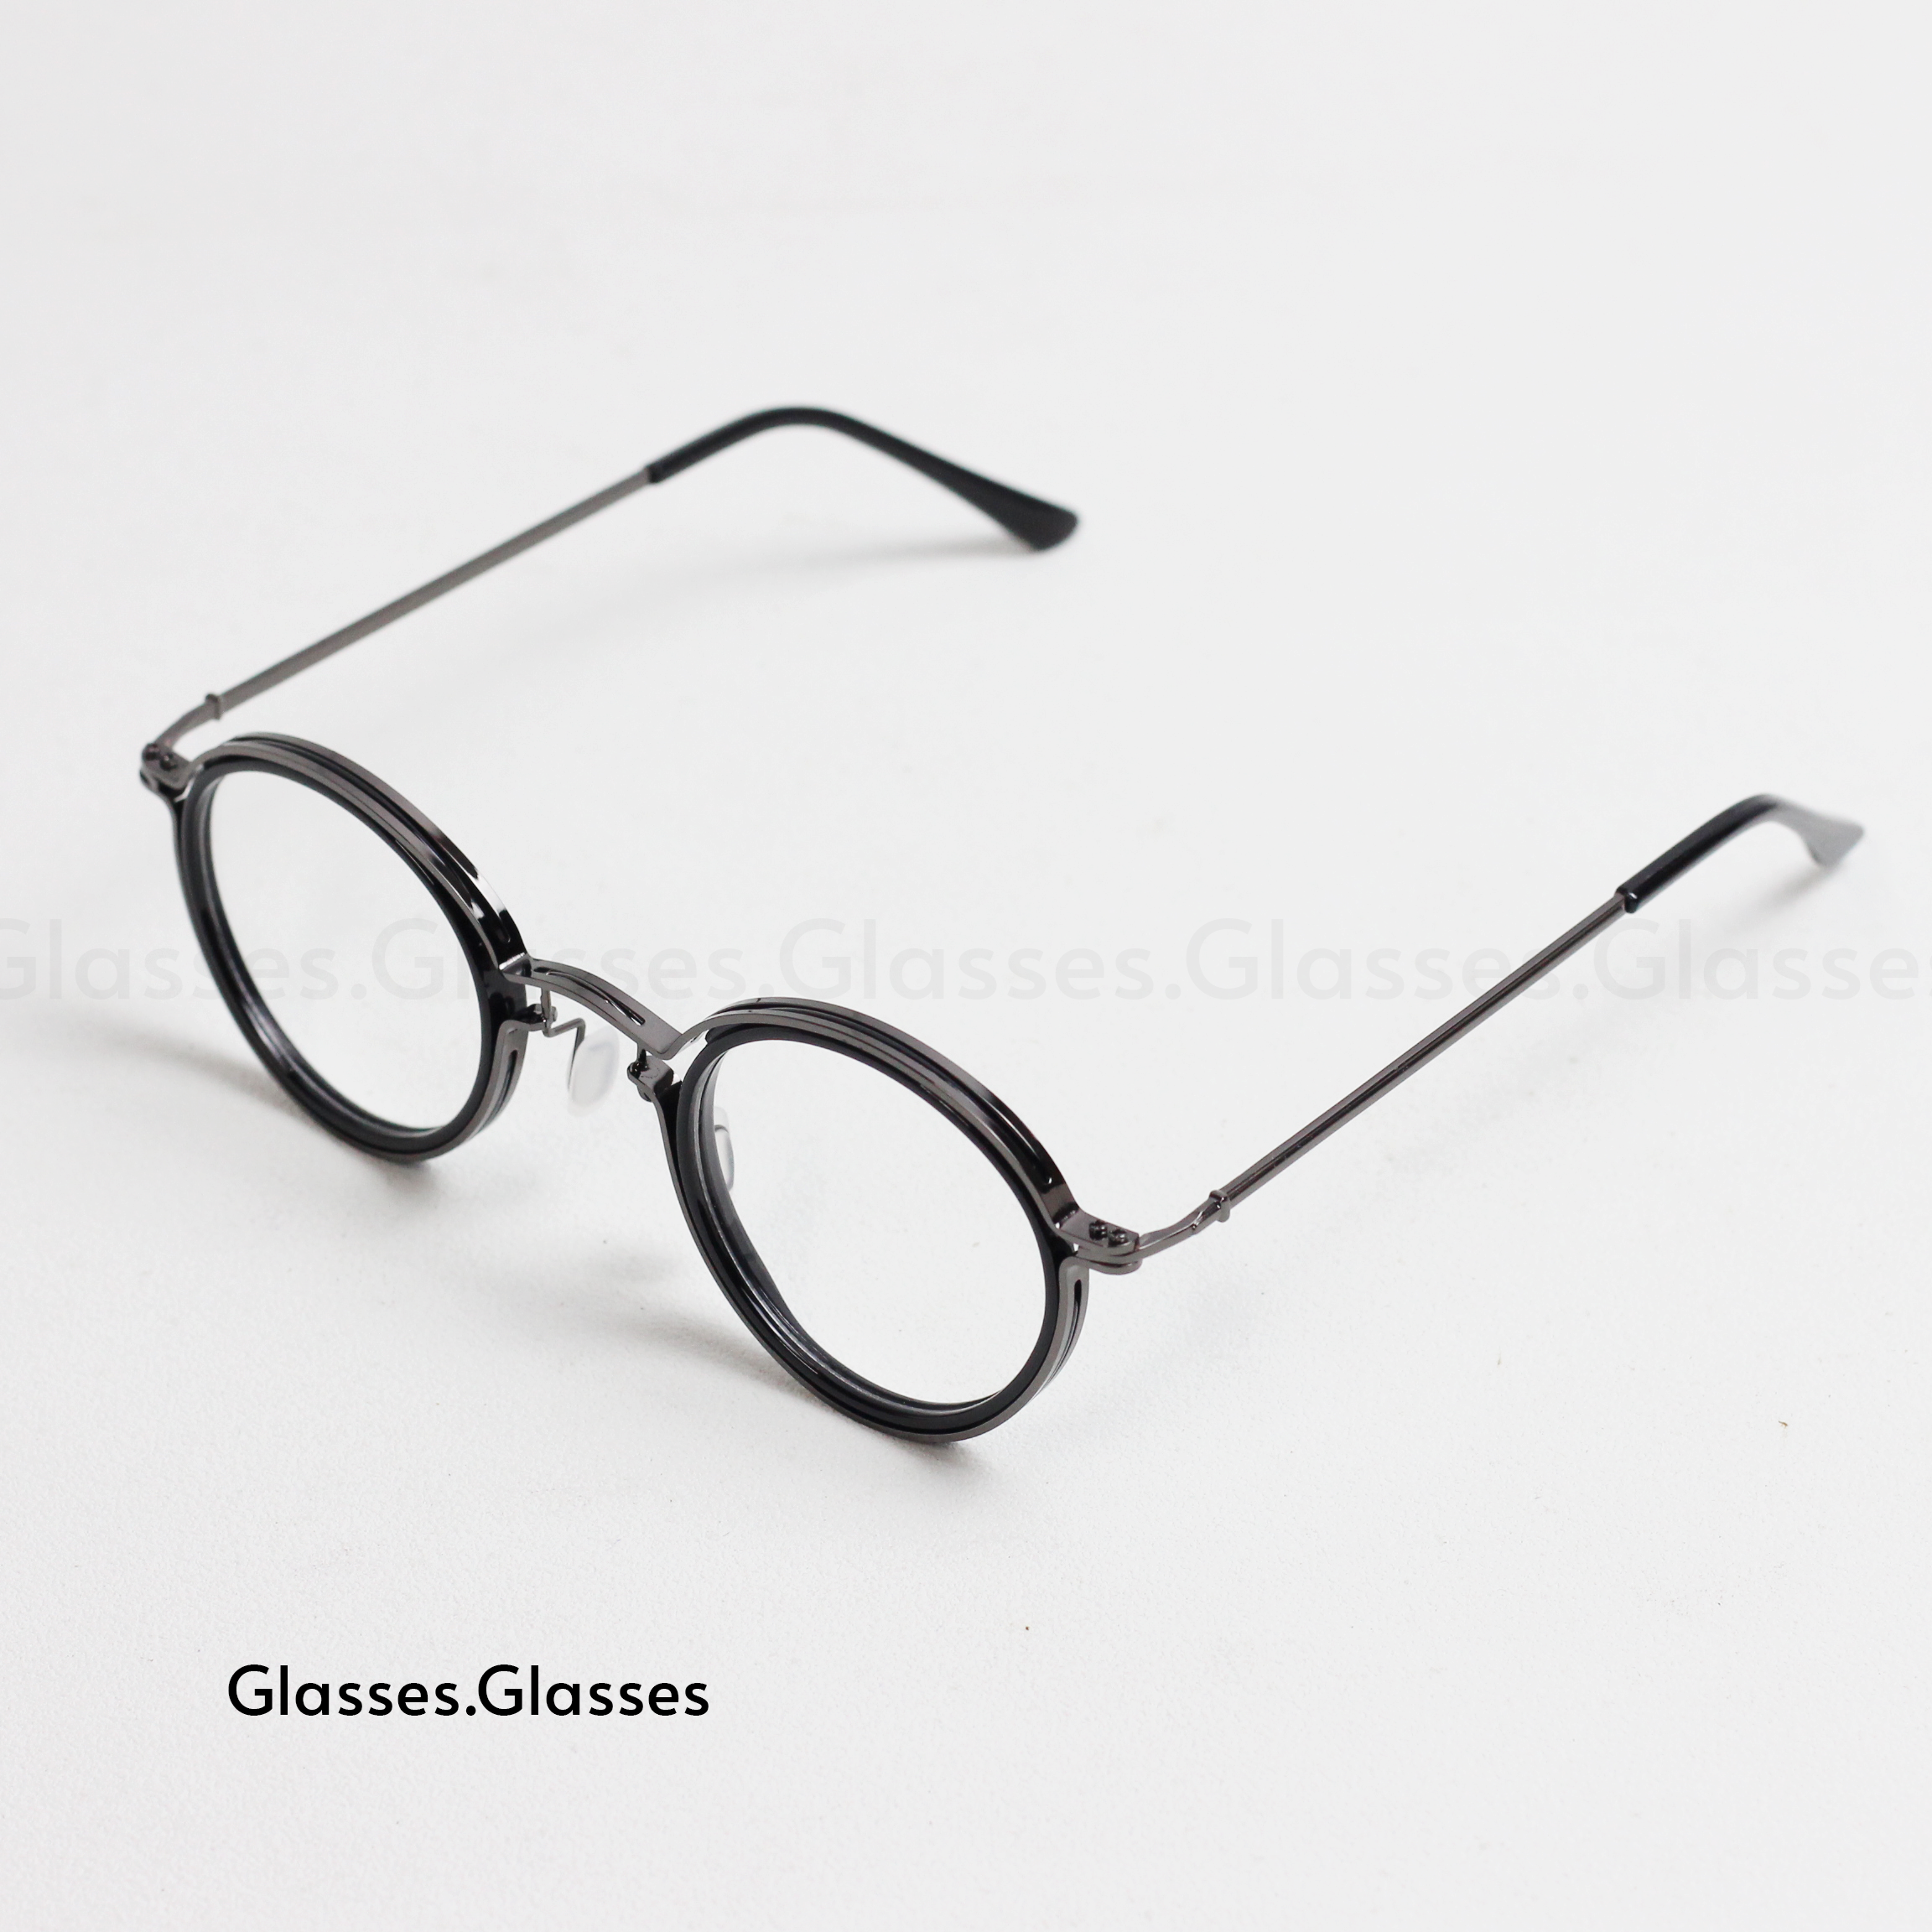 Martin - Alloy Frame Round Glasses